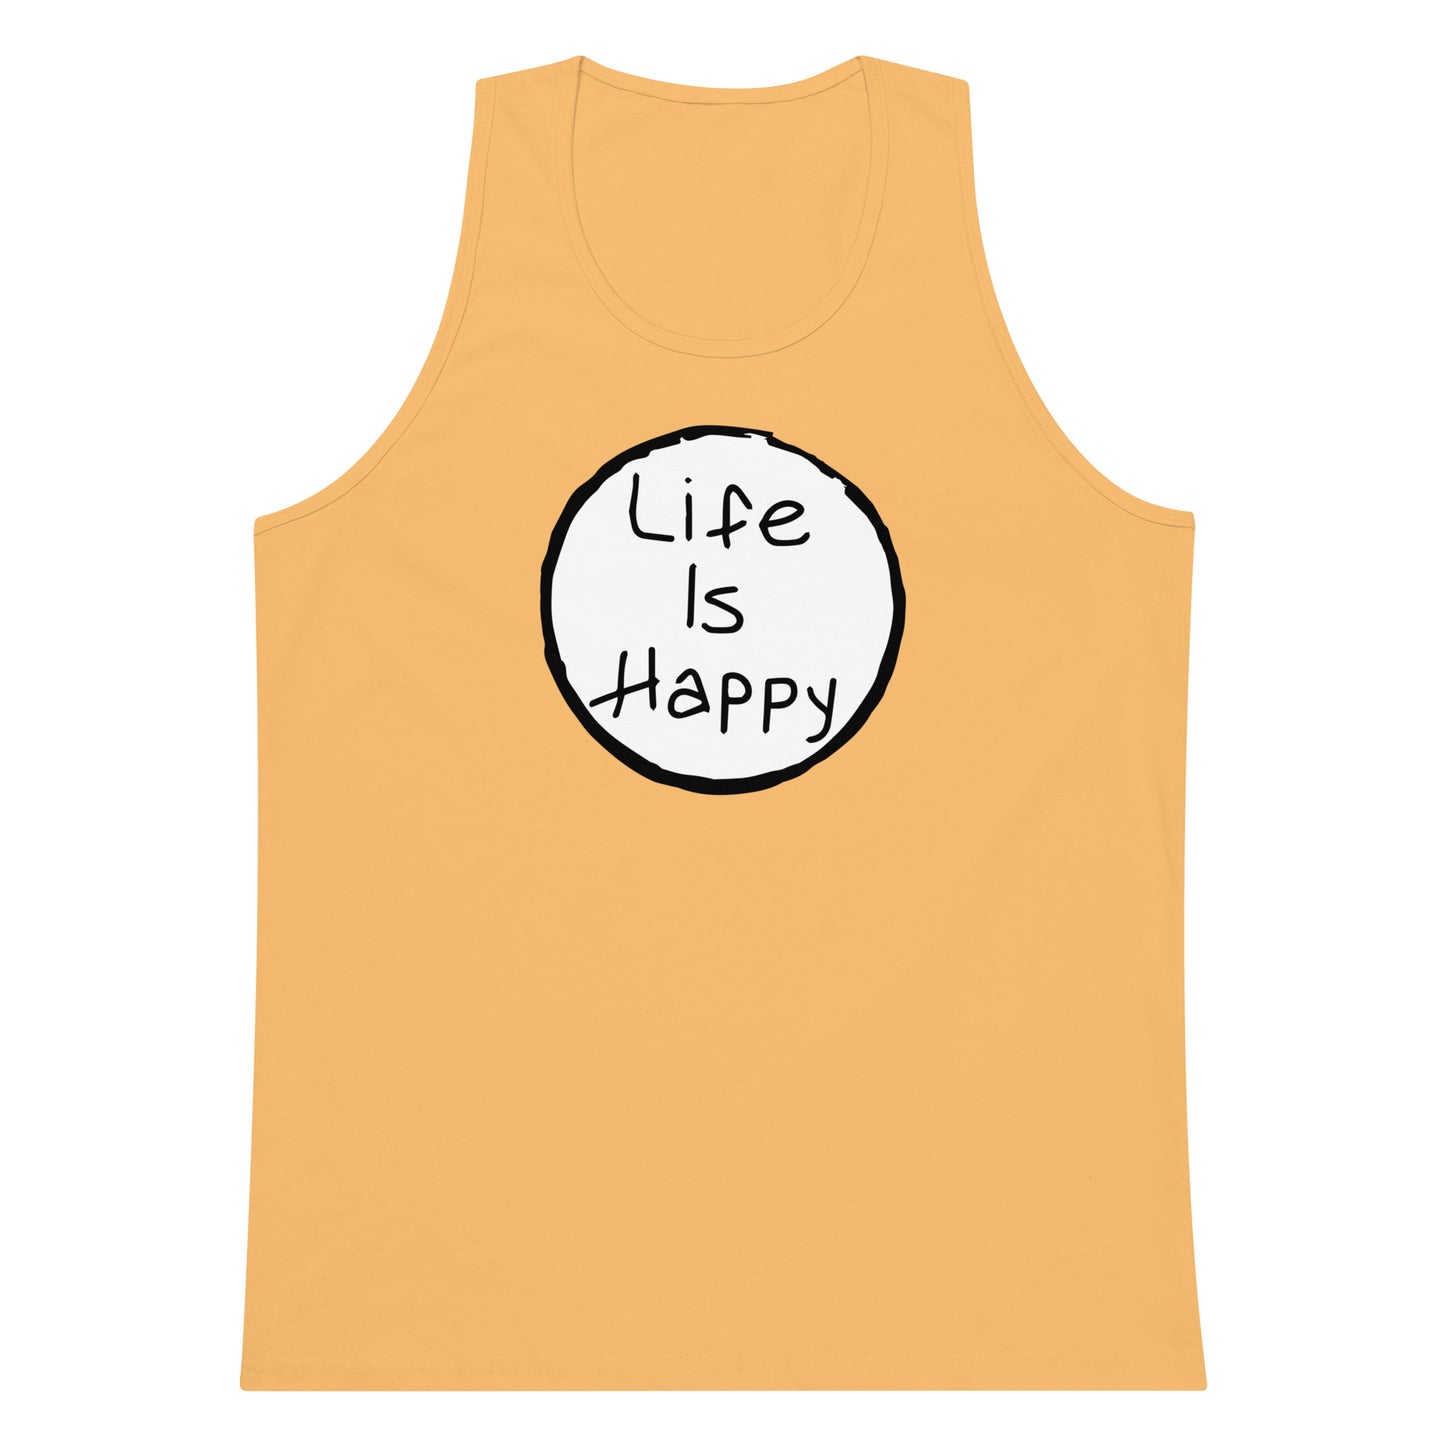 Life is Happy premium tank top